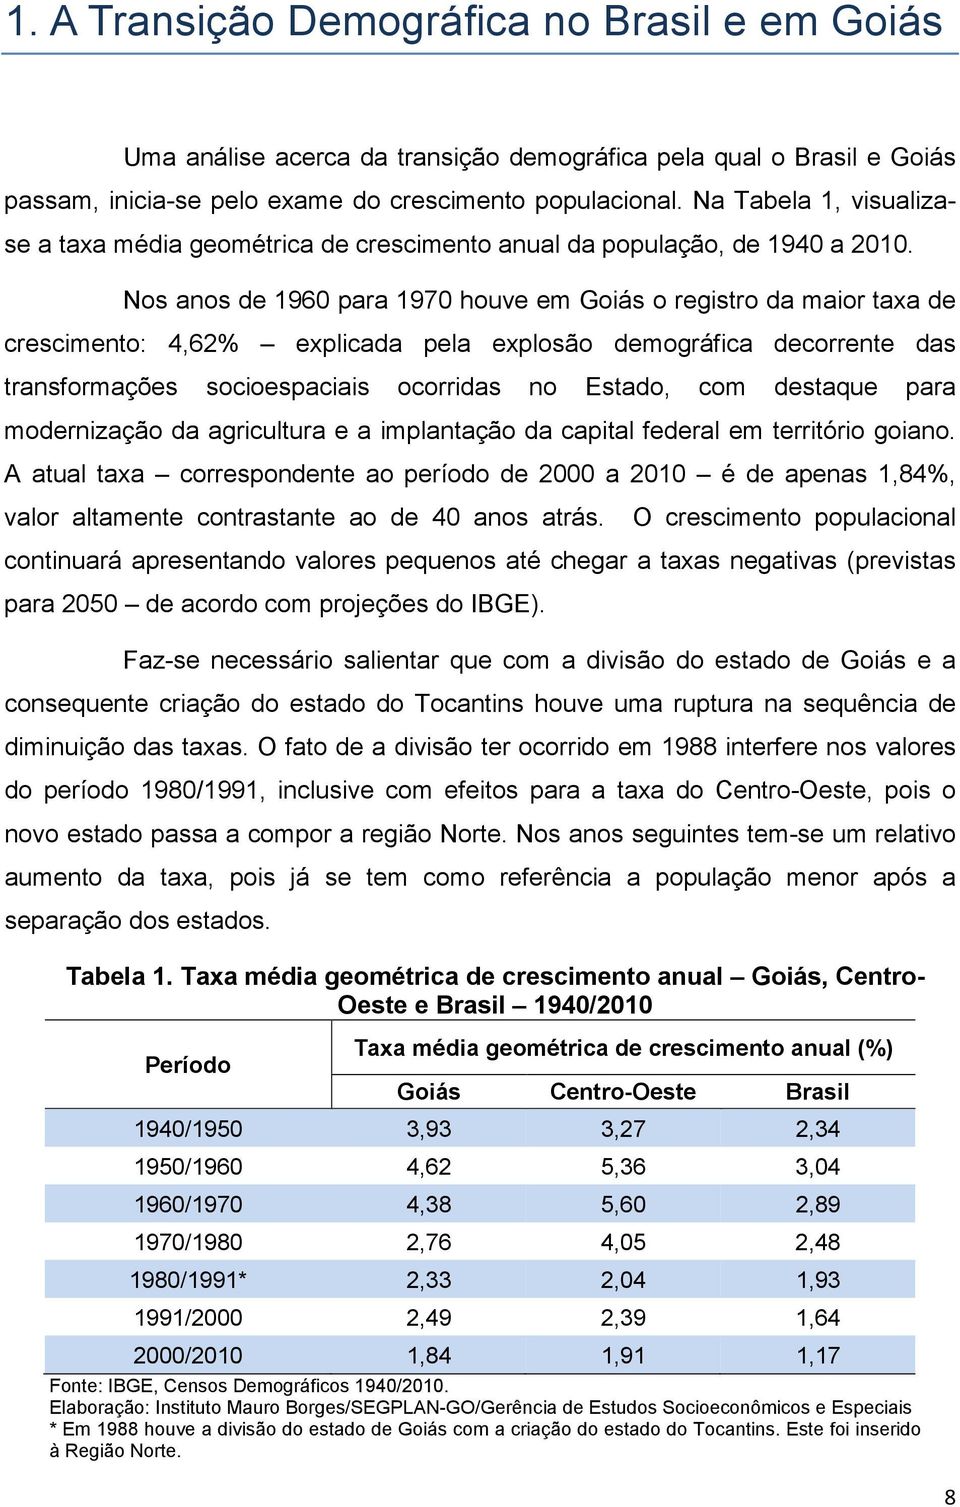 Nos anos de 1960 para 1970 houve em Goiás o registro da maior taxa de crescimento: 4,62% explicada pela explosão demográfica decorrente das transformações socioespaciais ocorridas no Estado, com